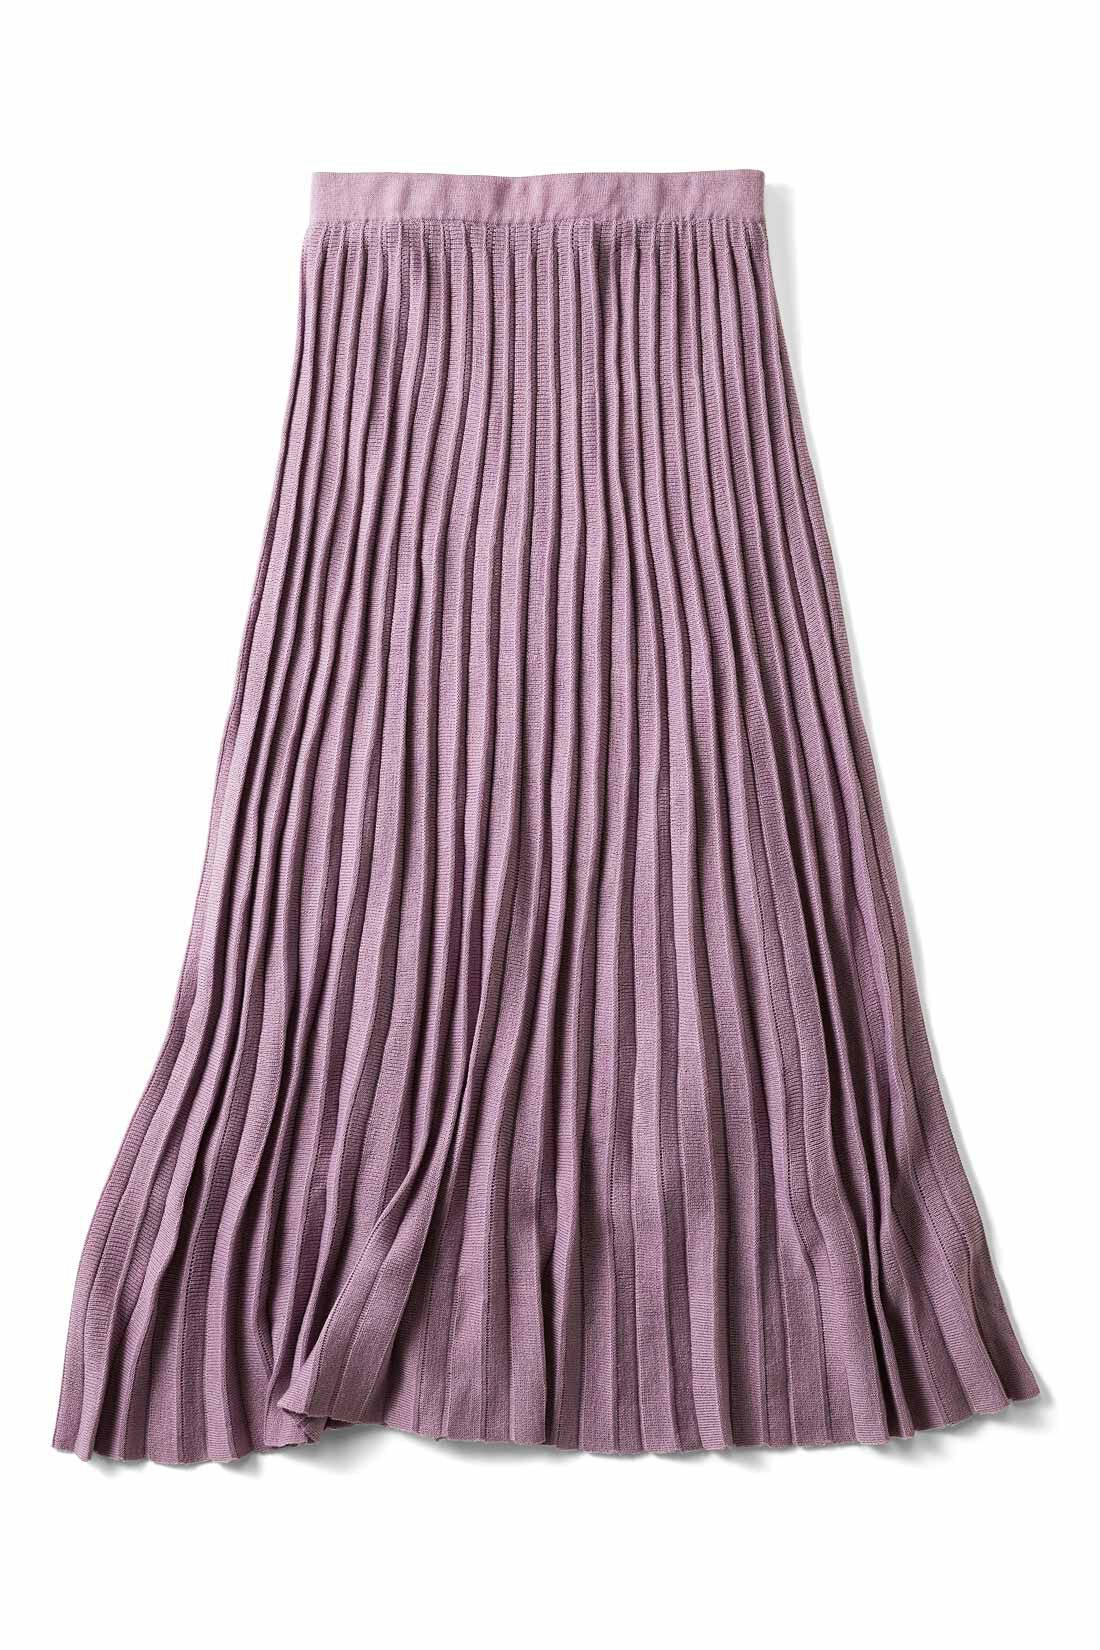 シロップ．|きらら舎コラボ！ ウニの殻みたいなニットプリーツスカート〈紫〉